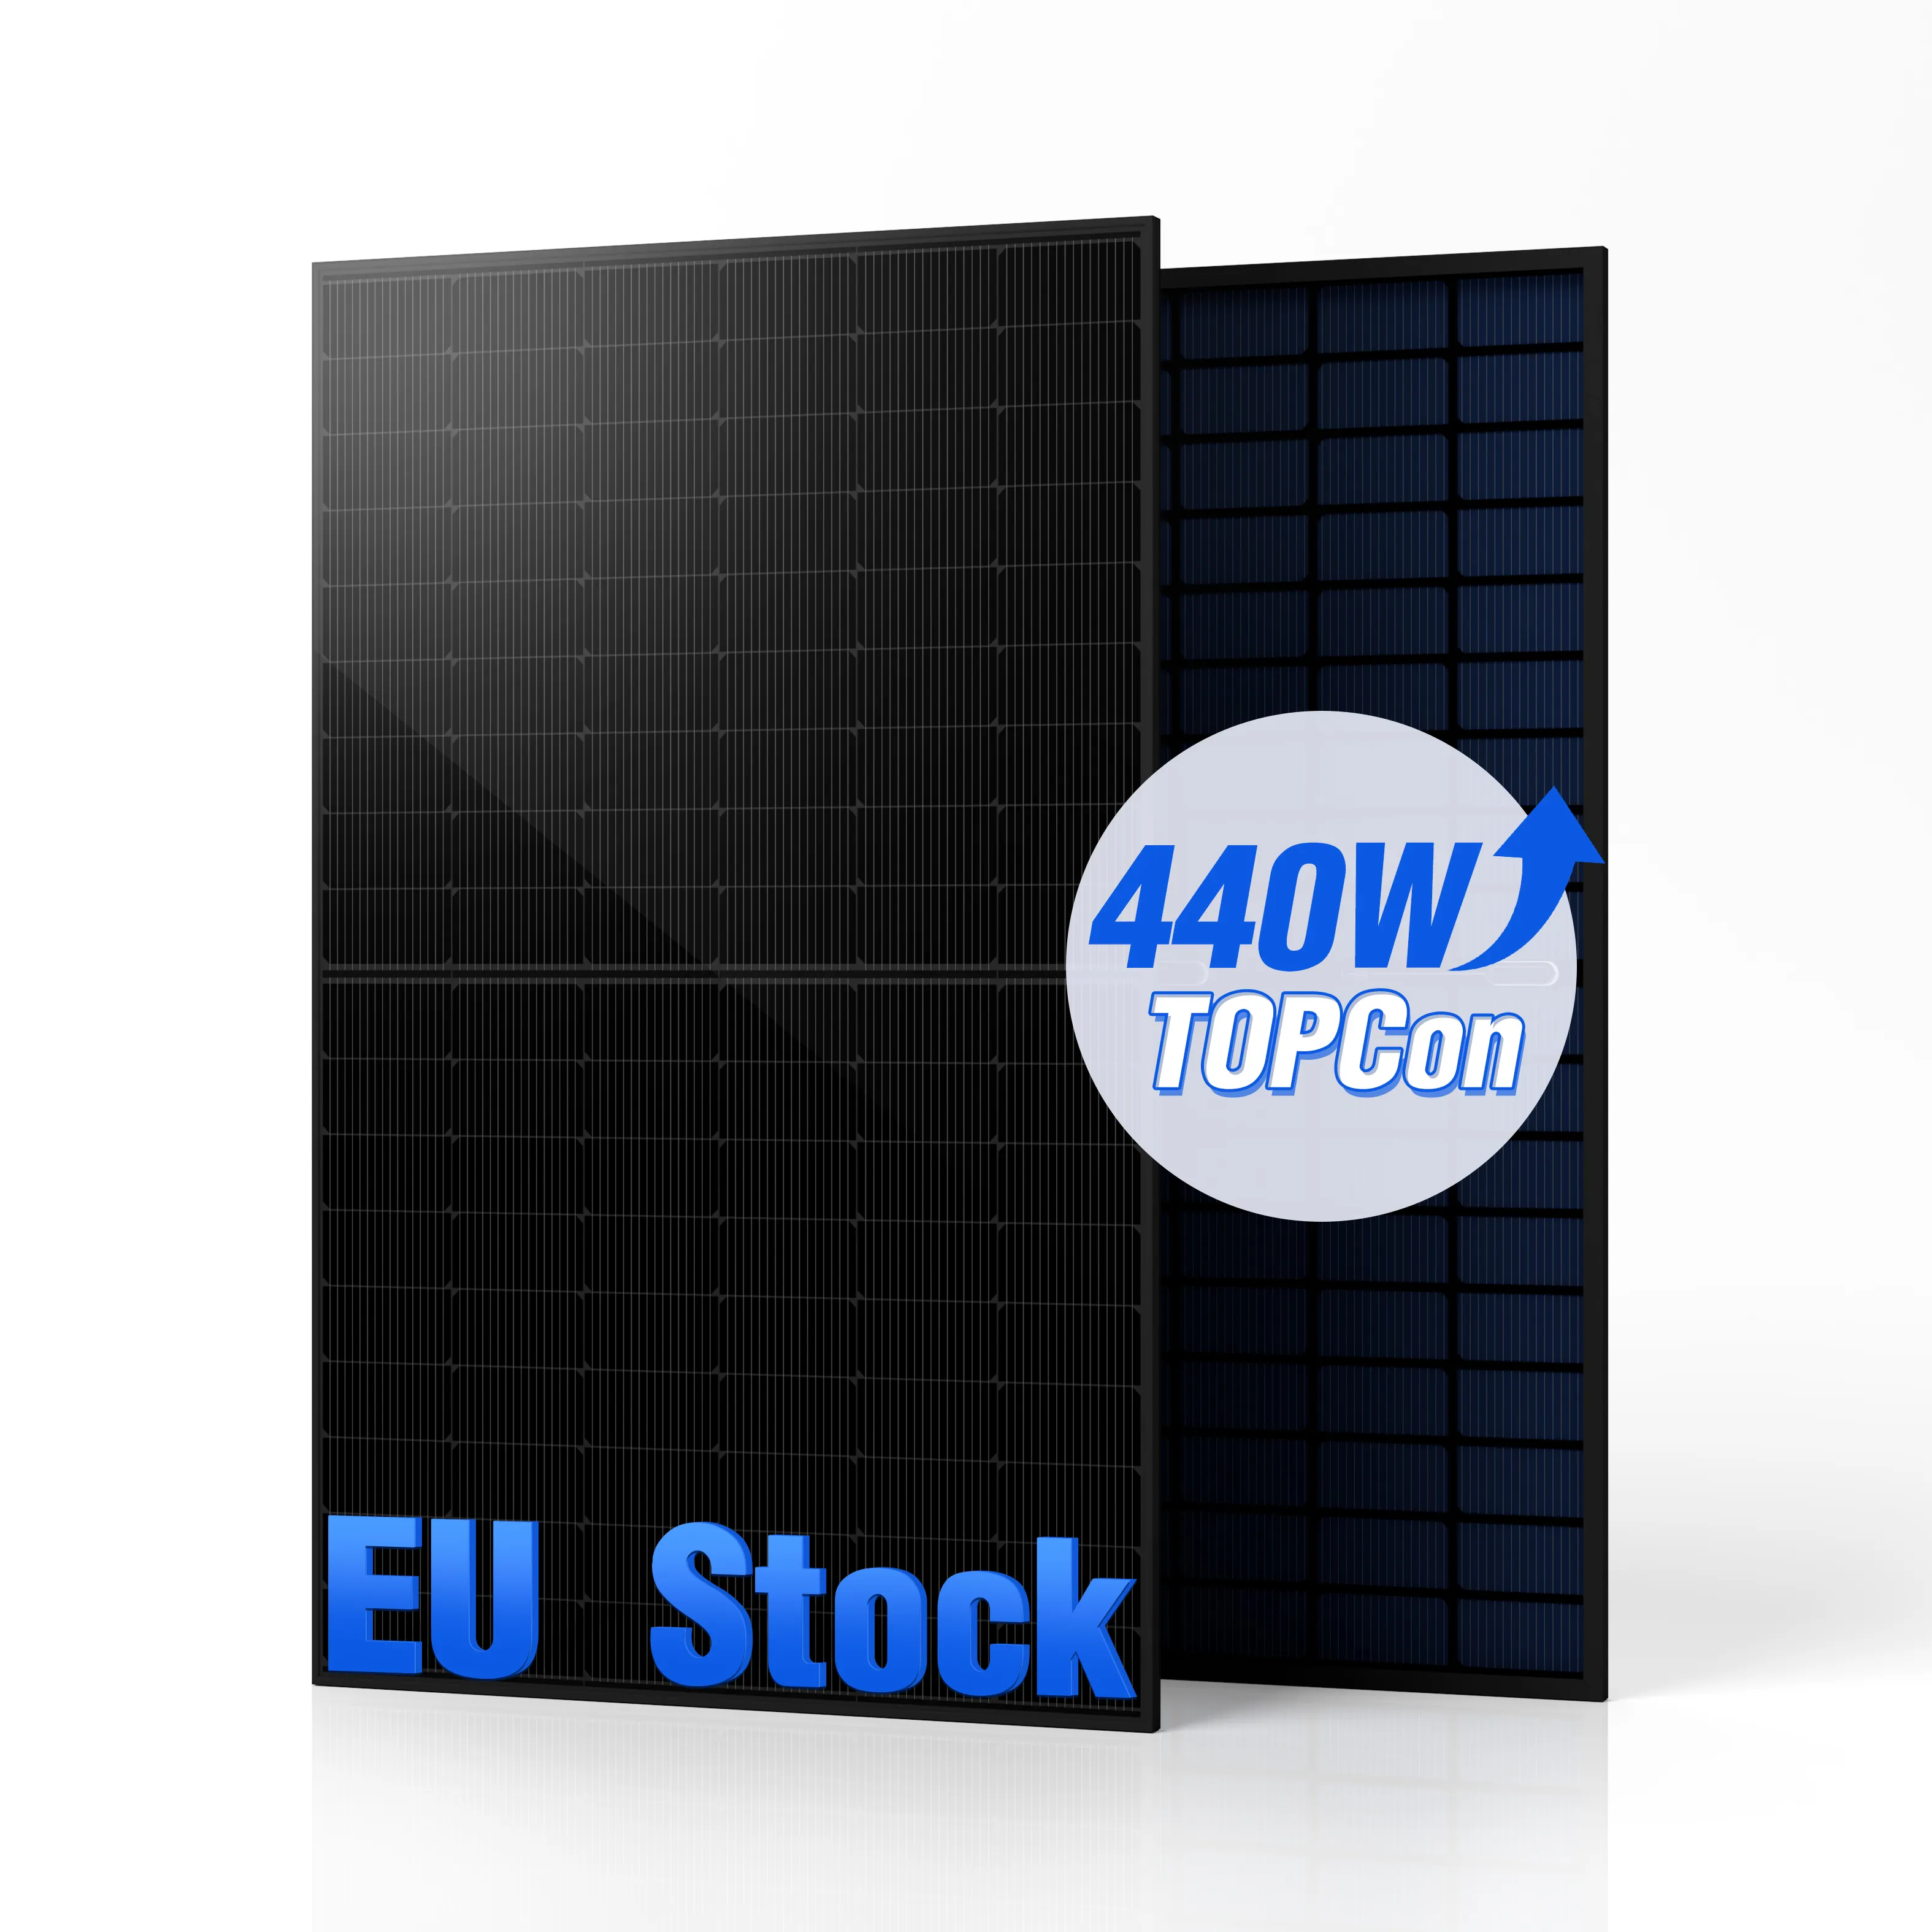 Entrepôt de l'UE stock allemagne panneau solaire monocristallin maison entièrement noir 430w 440w panneaux solaires 410w cadre noir module pv